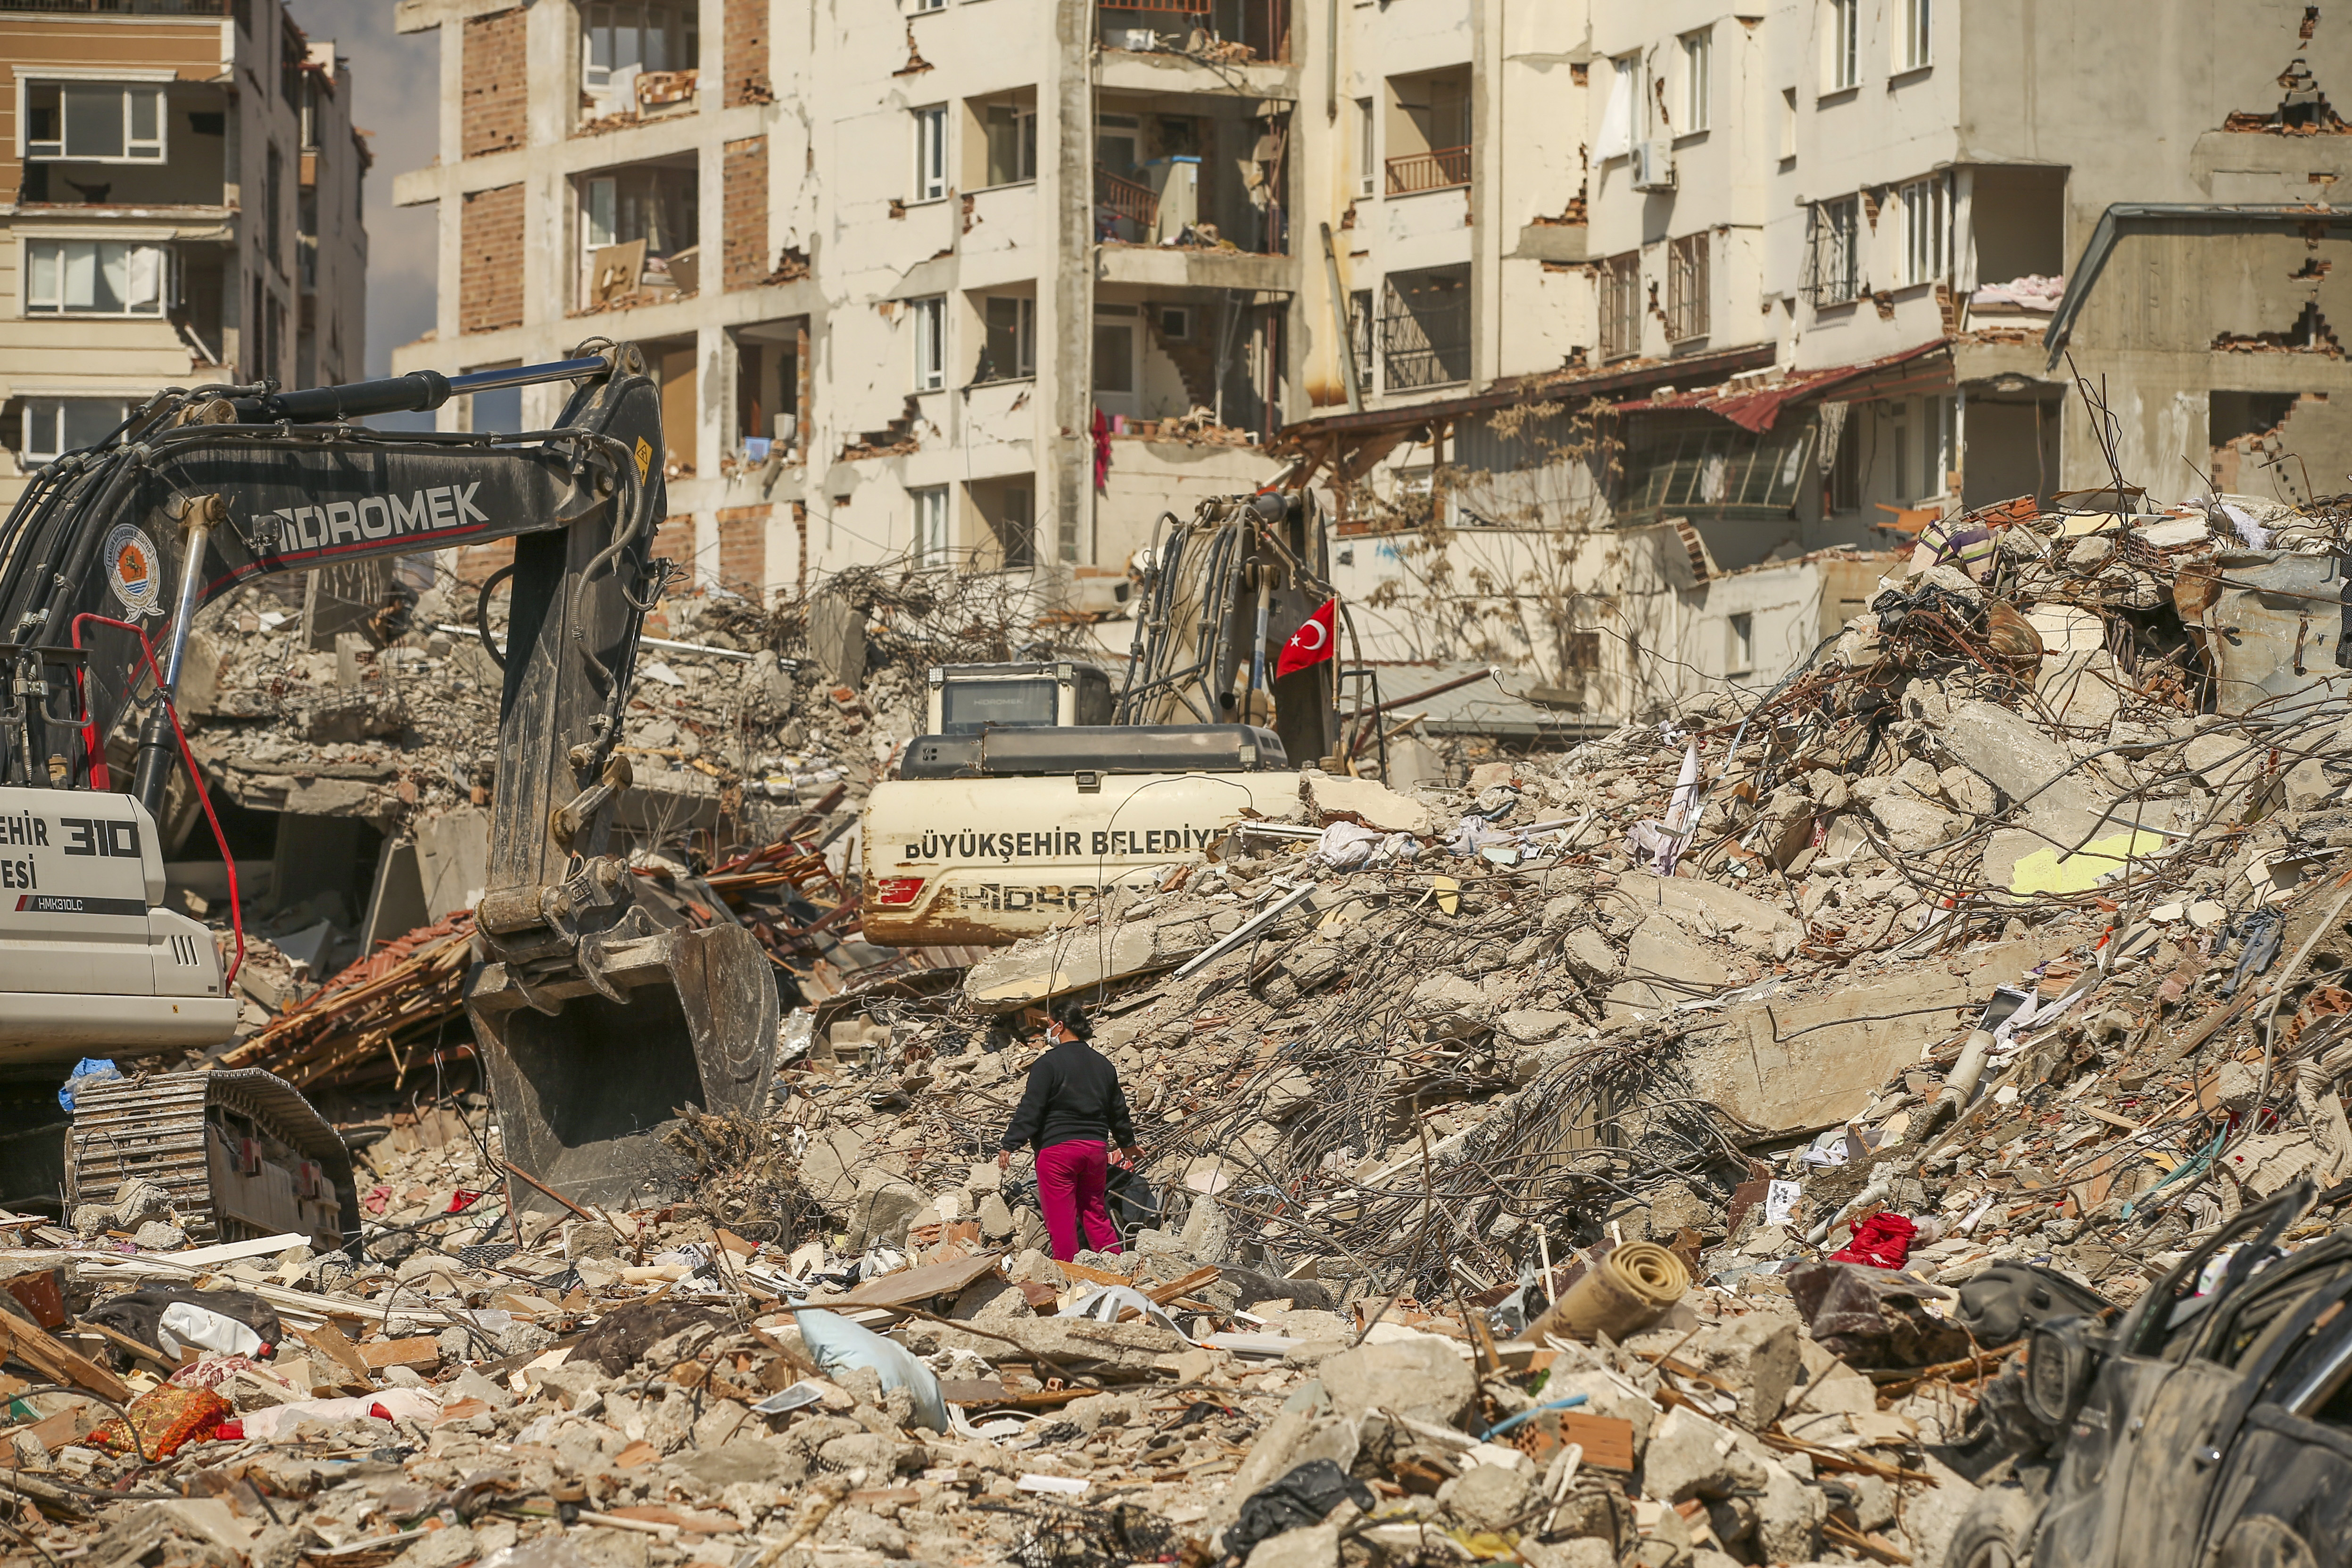 Die Toten Hosen: Band startet weitere Spendenaktion für Erdbebenopfer